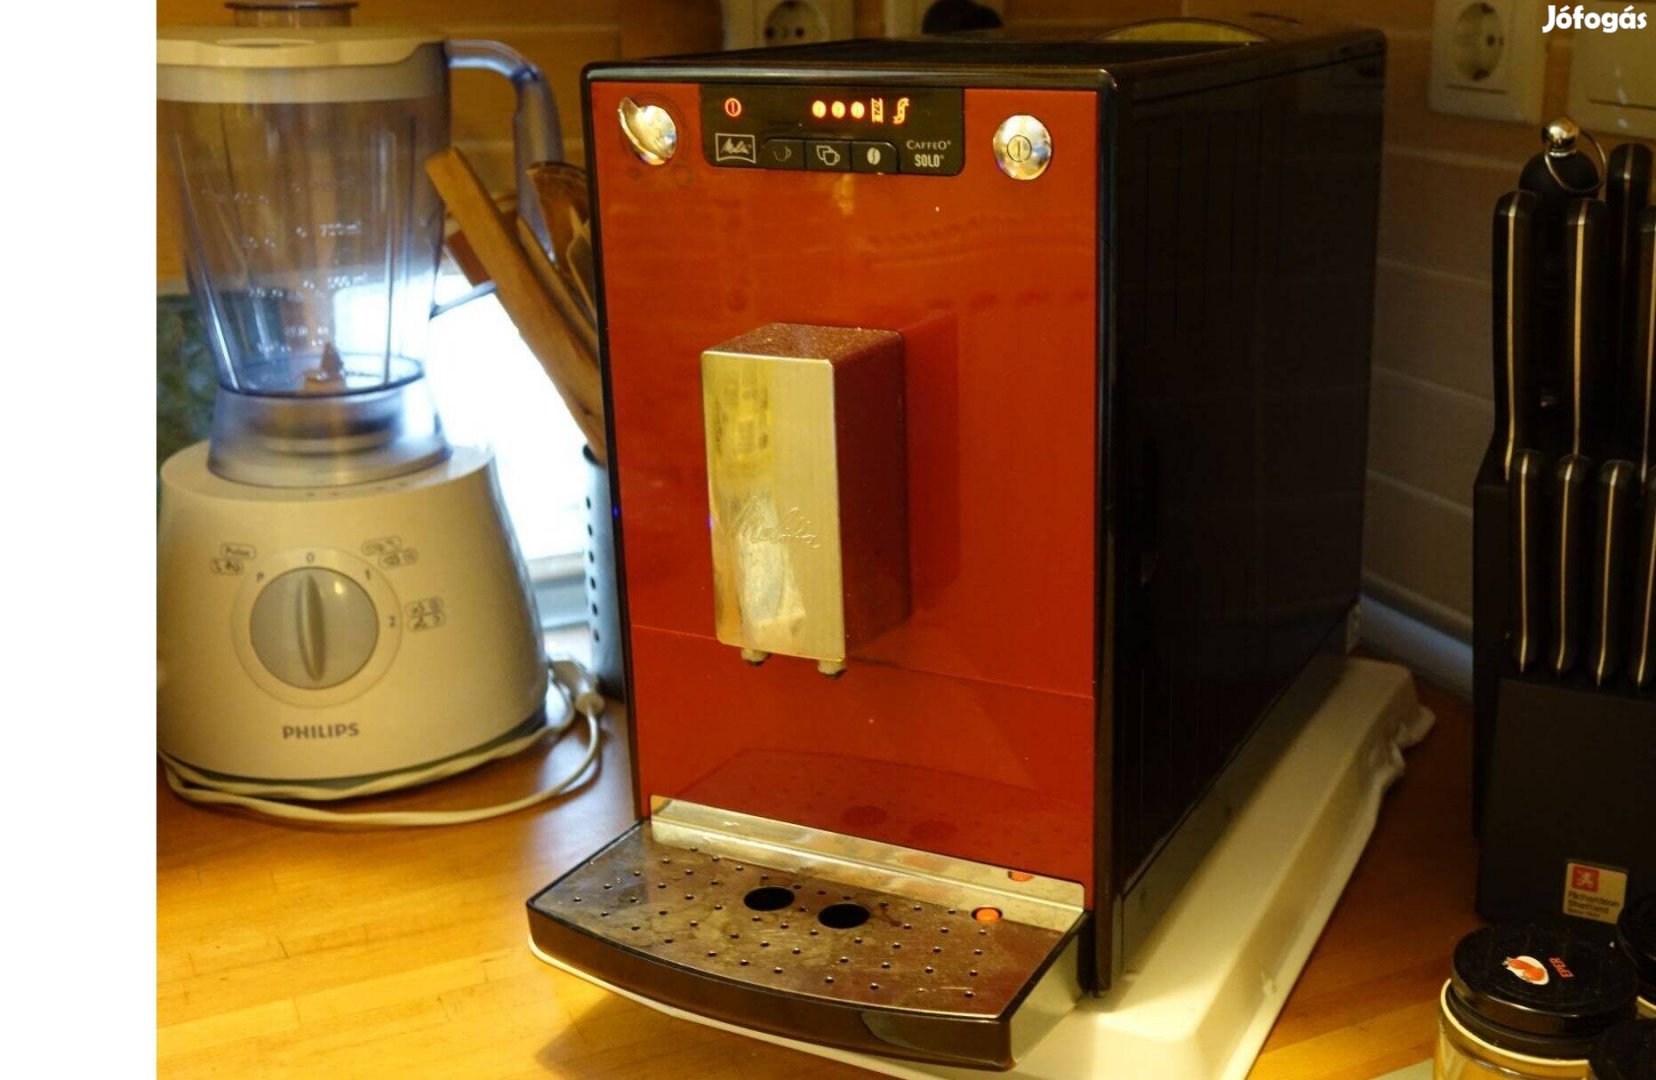 Melitta Caffeo Solo szuper automata kávéfőző